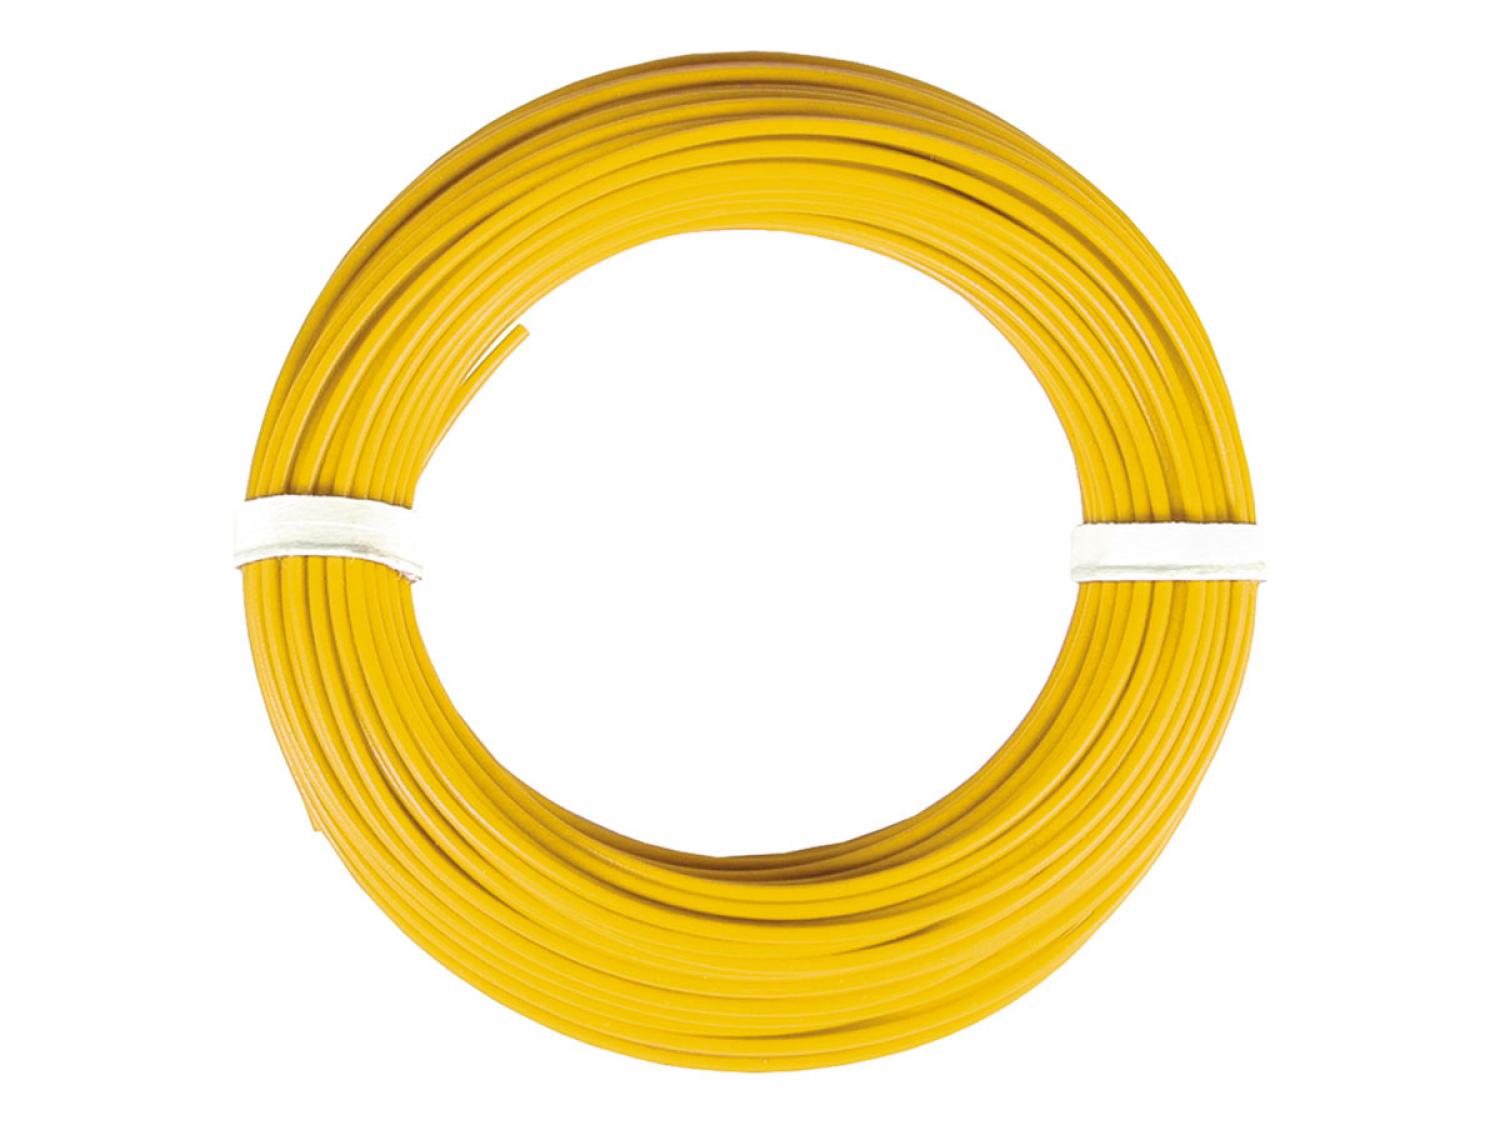 Viessmann 6864 Kabelring, 0,14 mm², gelb,10m